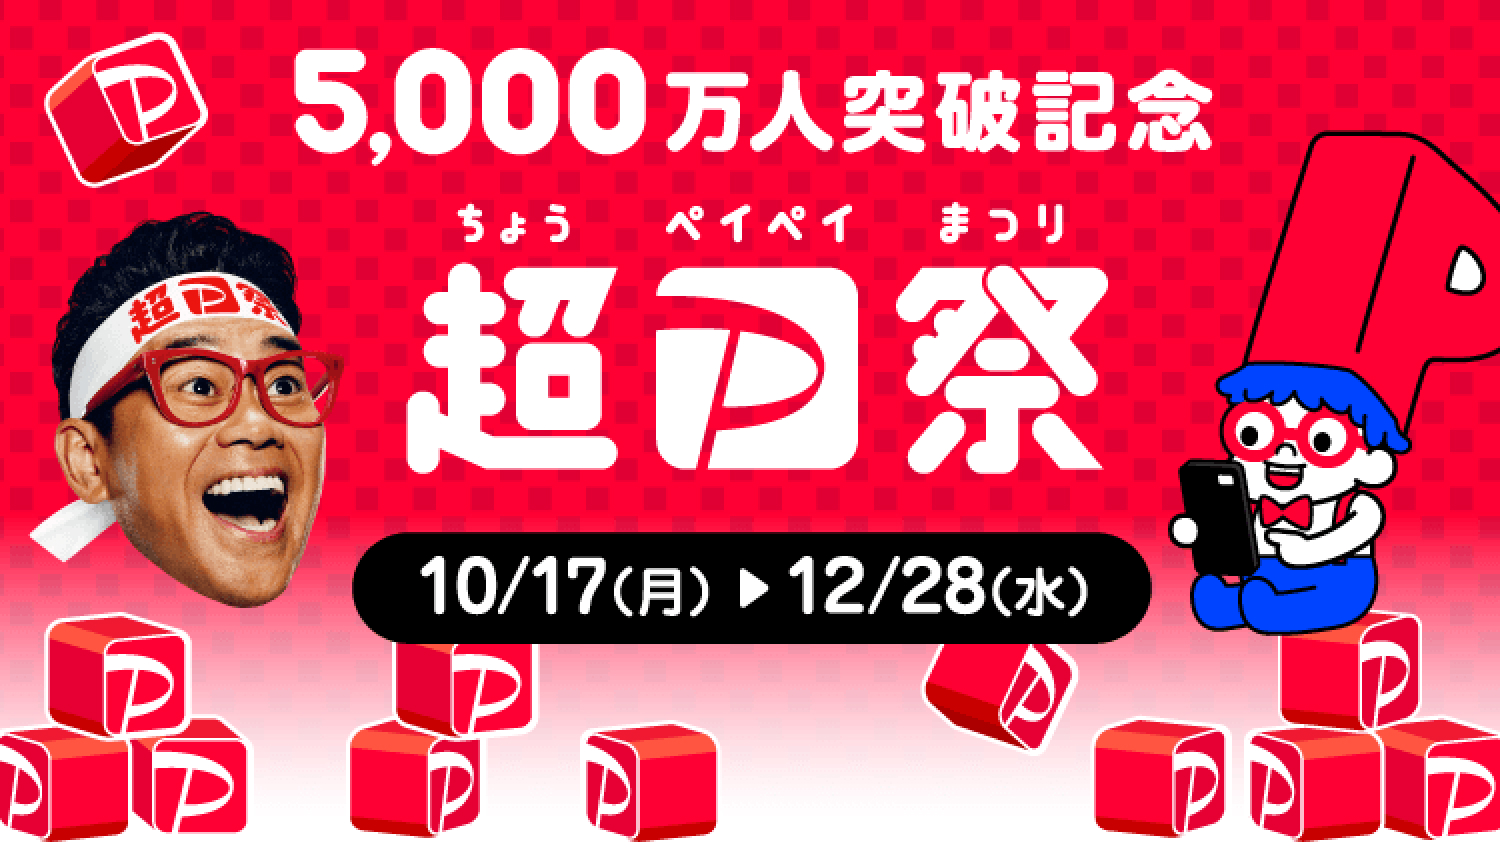 最大10万円分・1等全額還元!! 超PayPay祭が10月17日開始